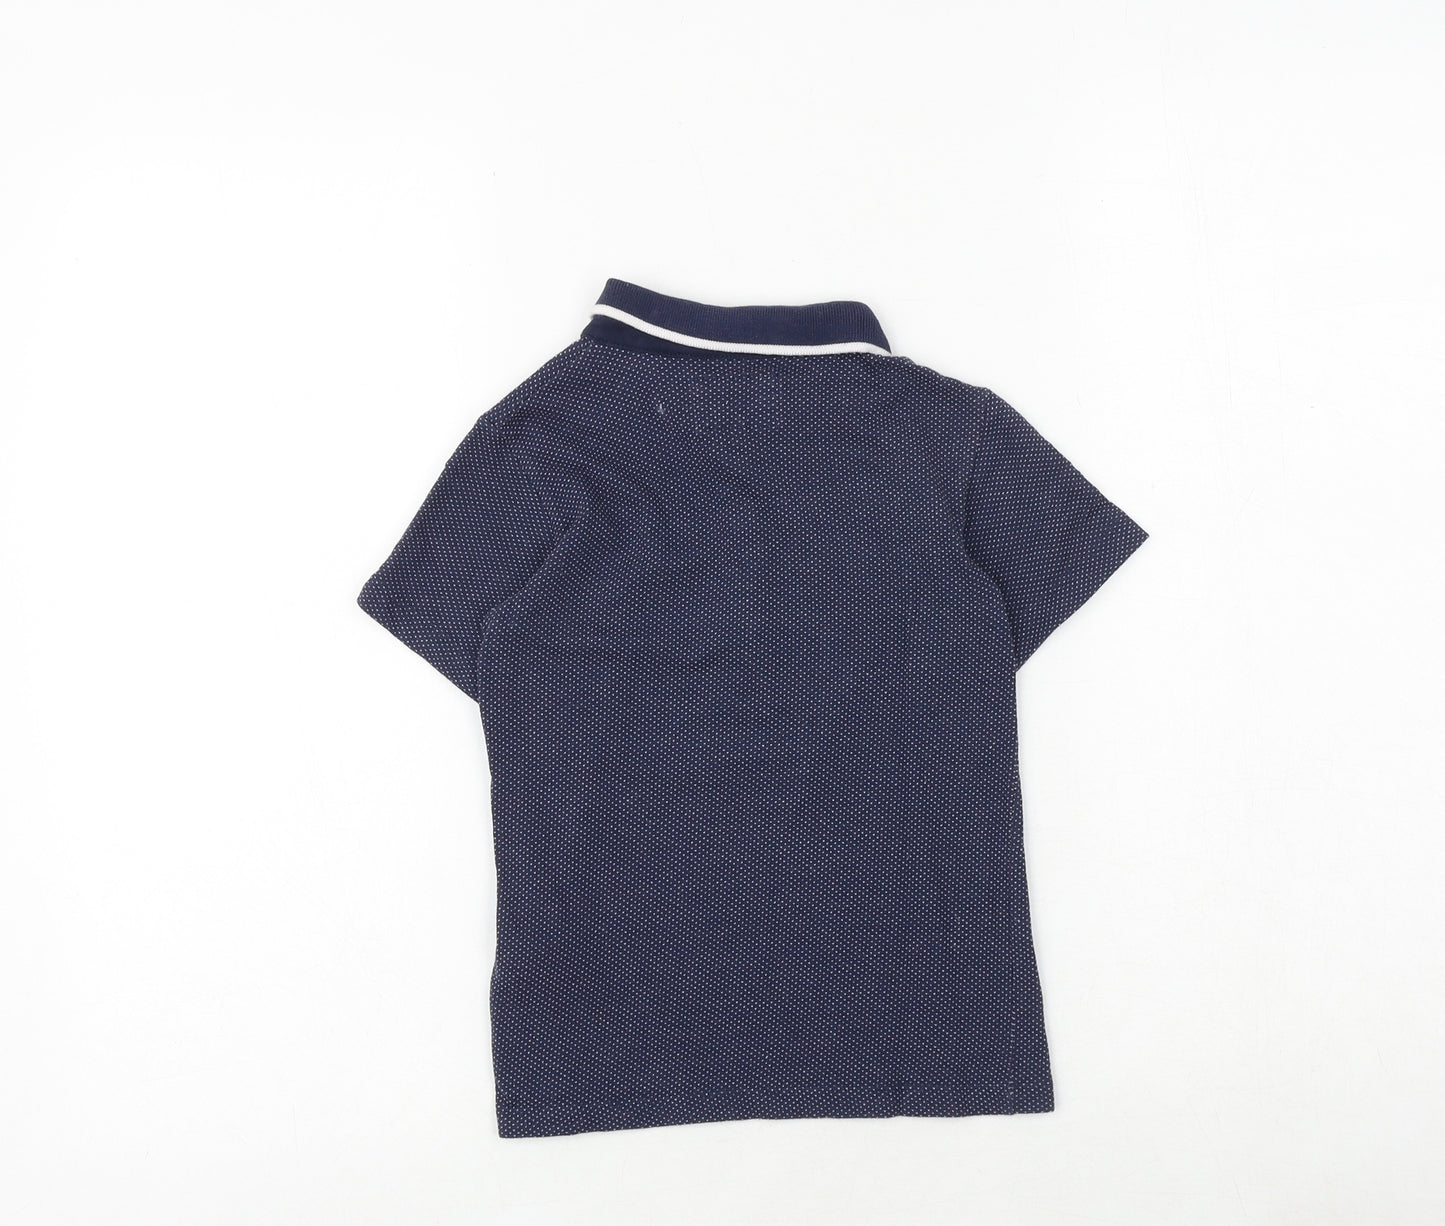 Debenhams Boys Blue Geometric 100% Cotton Pullover Polo Size 4-5 Years Collared Button